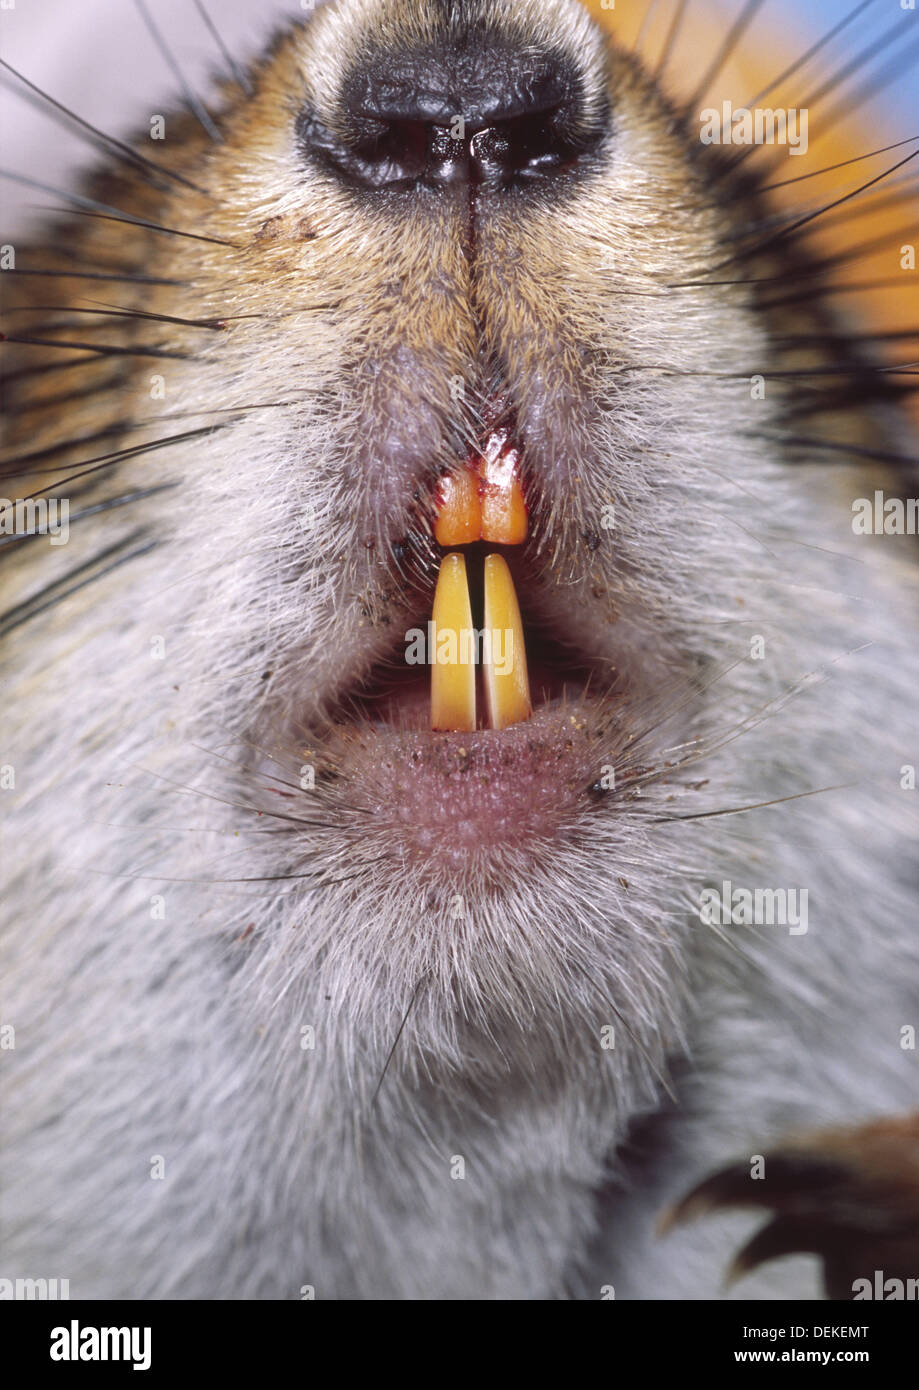 groundhog teeth images